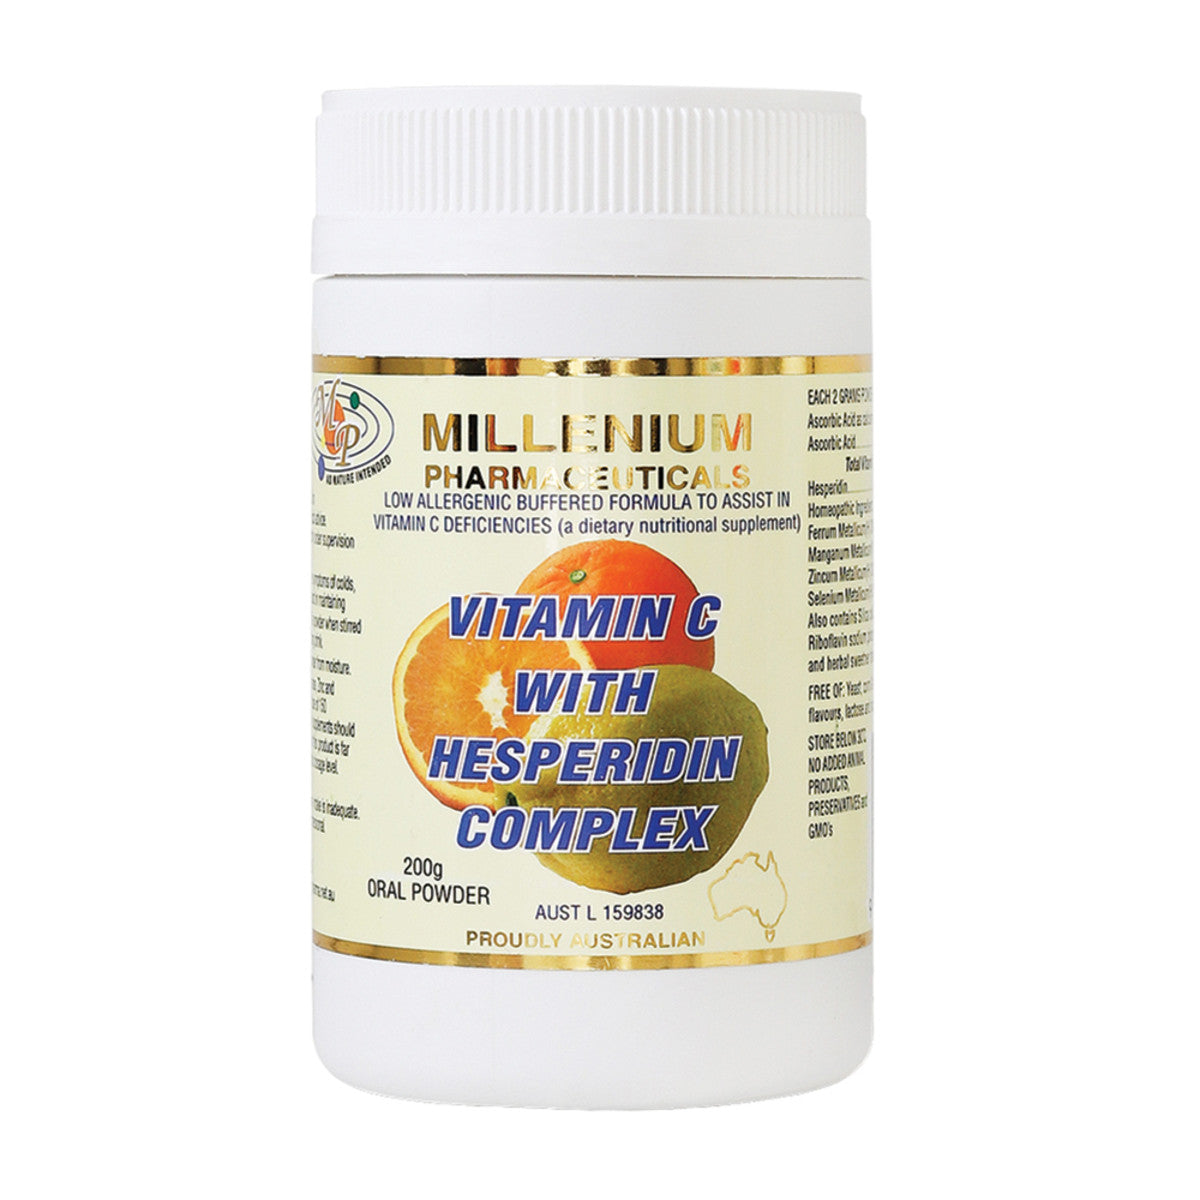 Millenium -   Pharmaceuticals Vitamn C with Hesperidin Complex